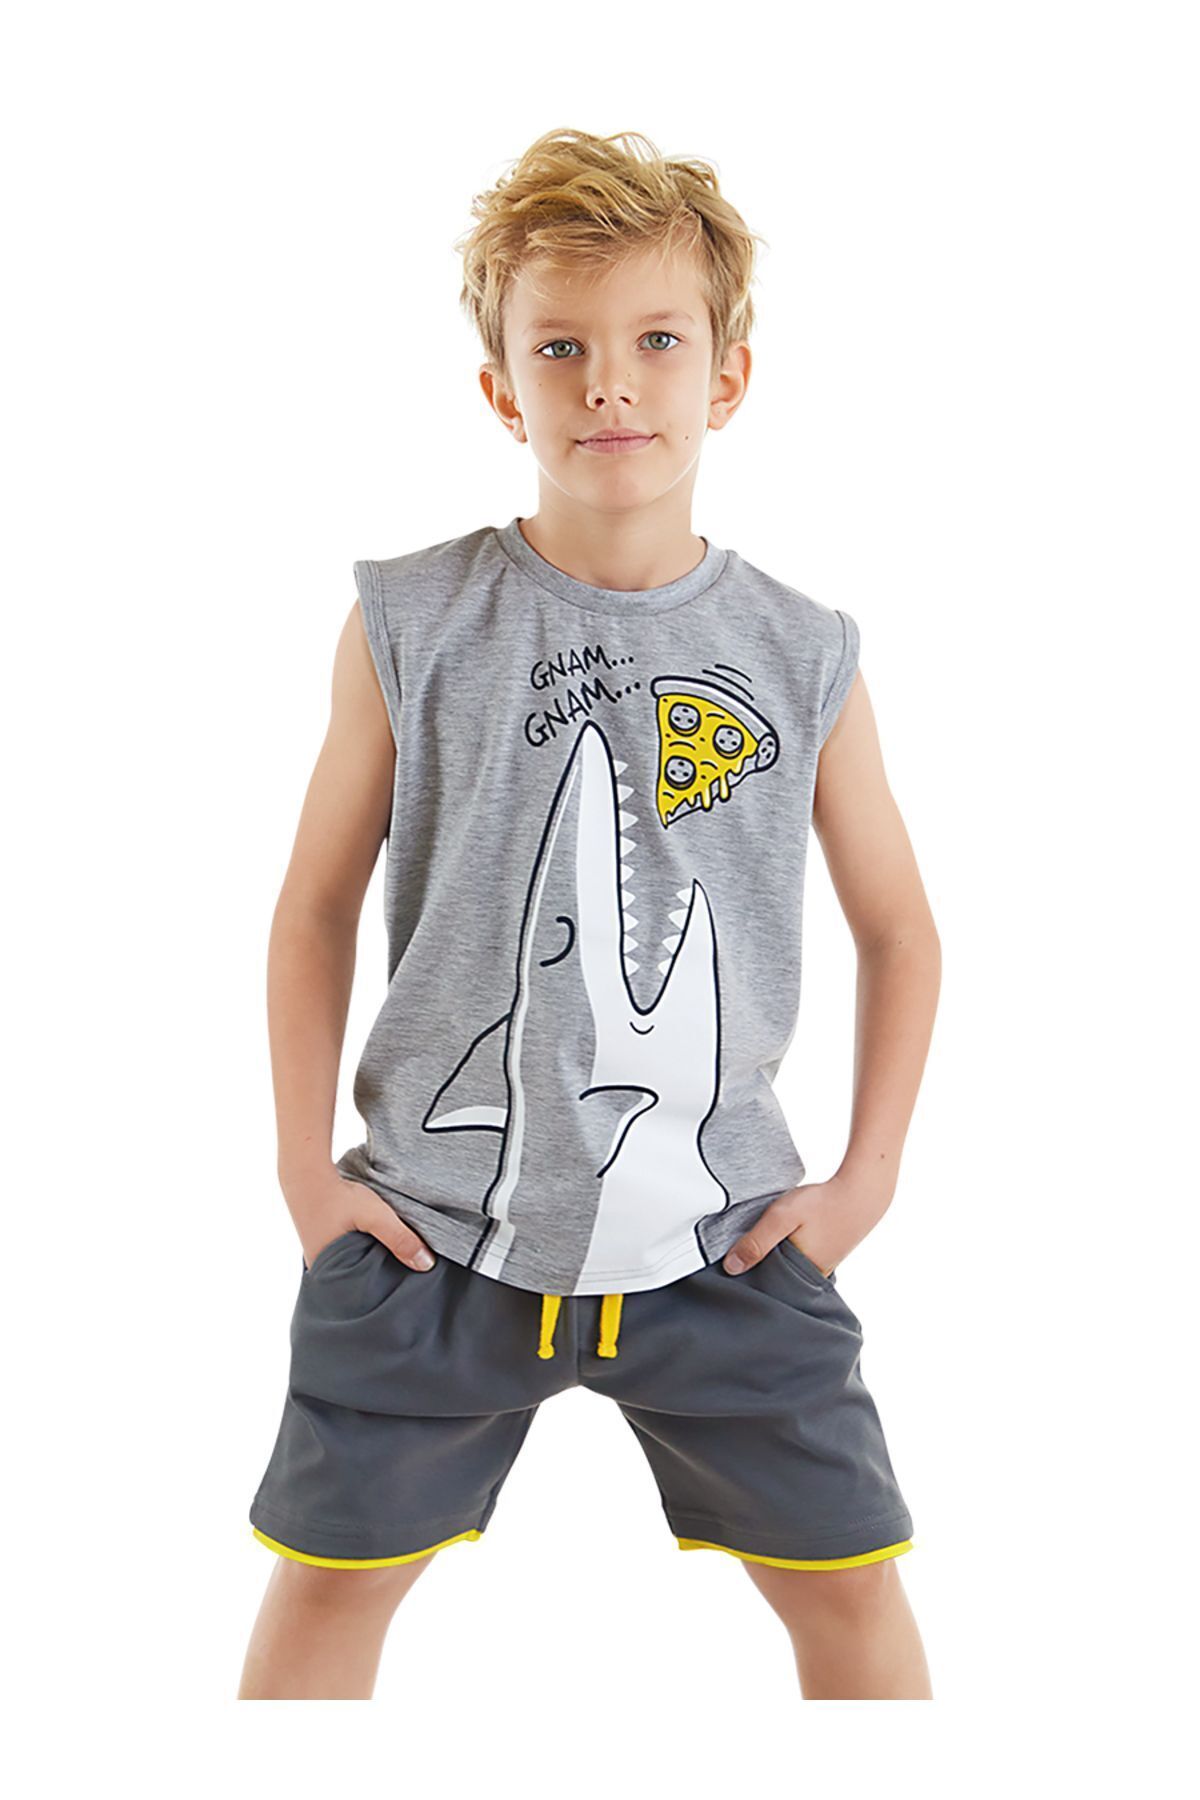 MSHB&G Pizzacı Köpekbalığı Erkek Çocuk T-shirt Şort Takım